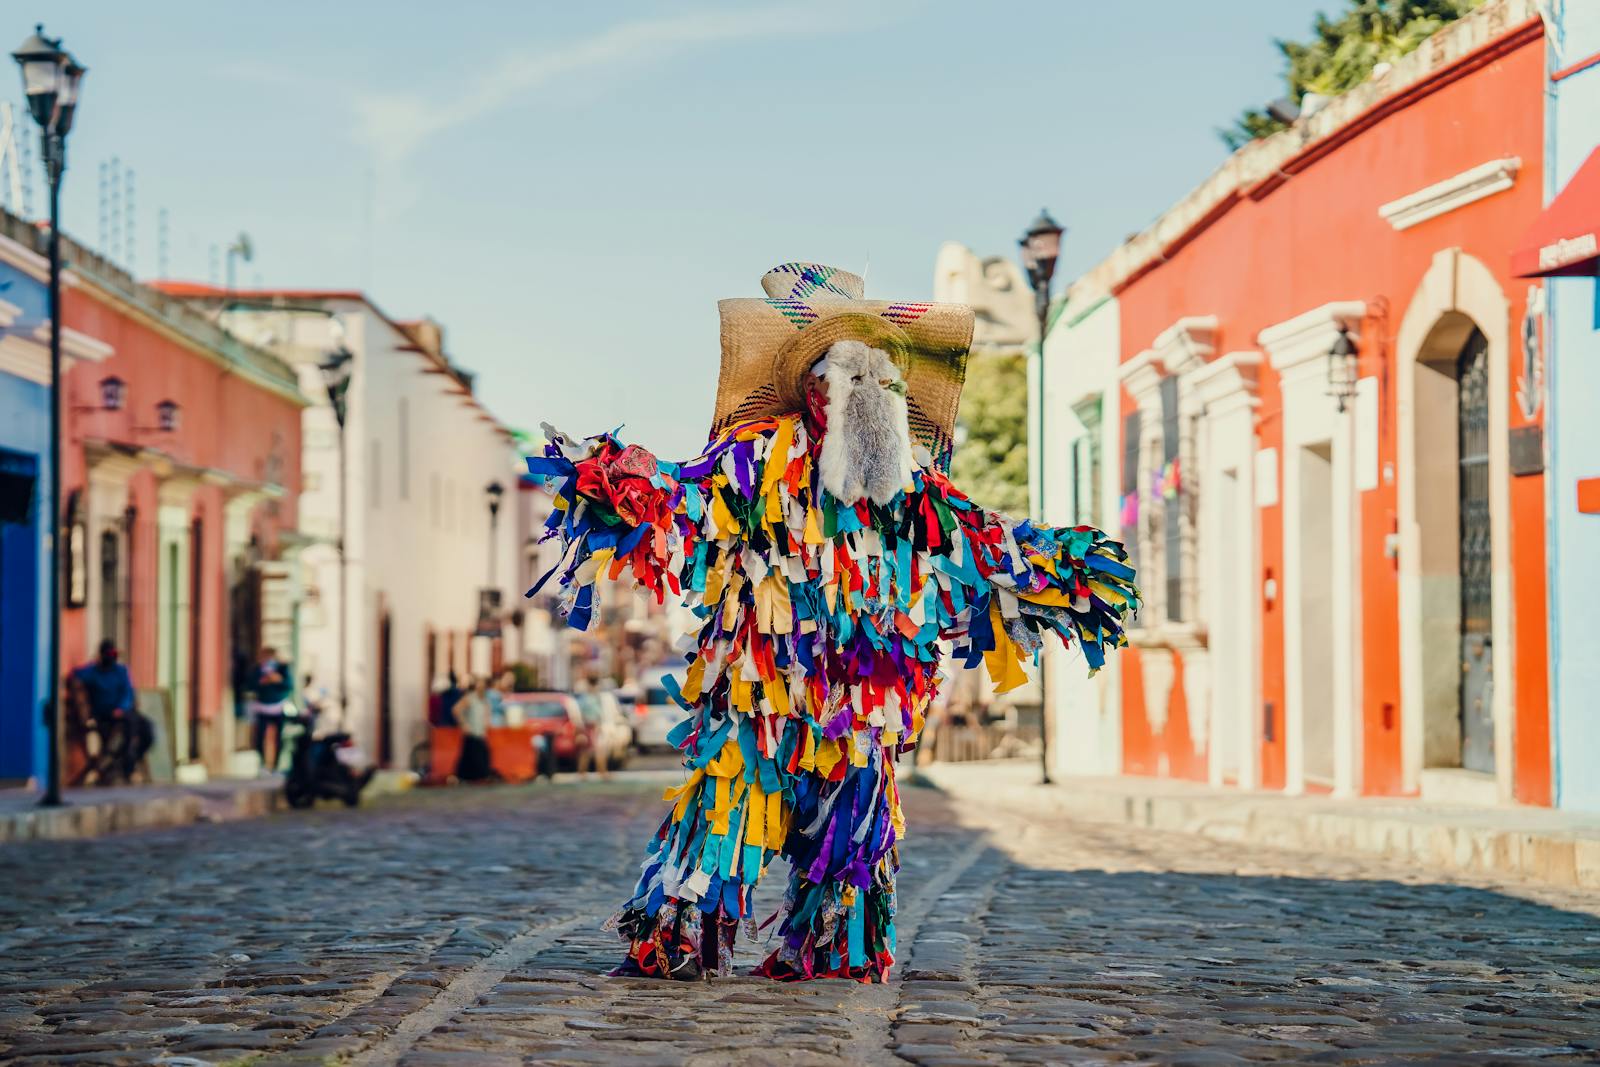 A street performer in Oaxaca